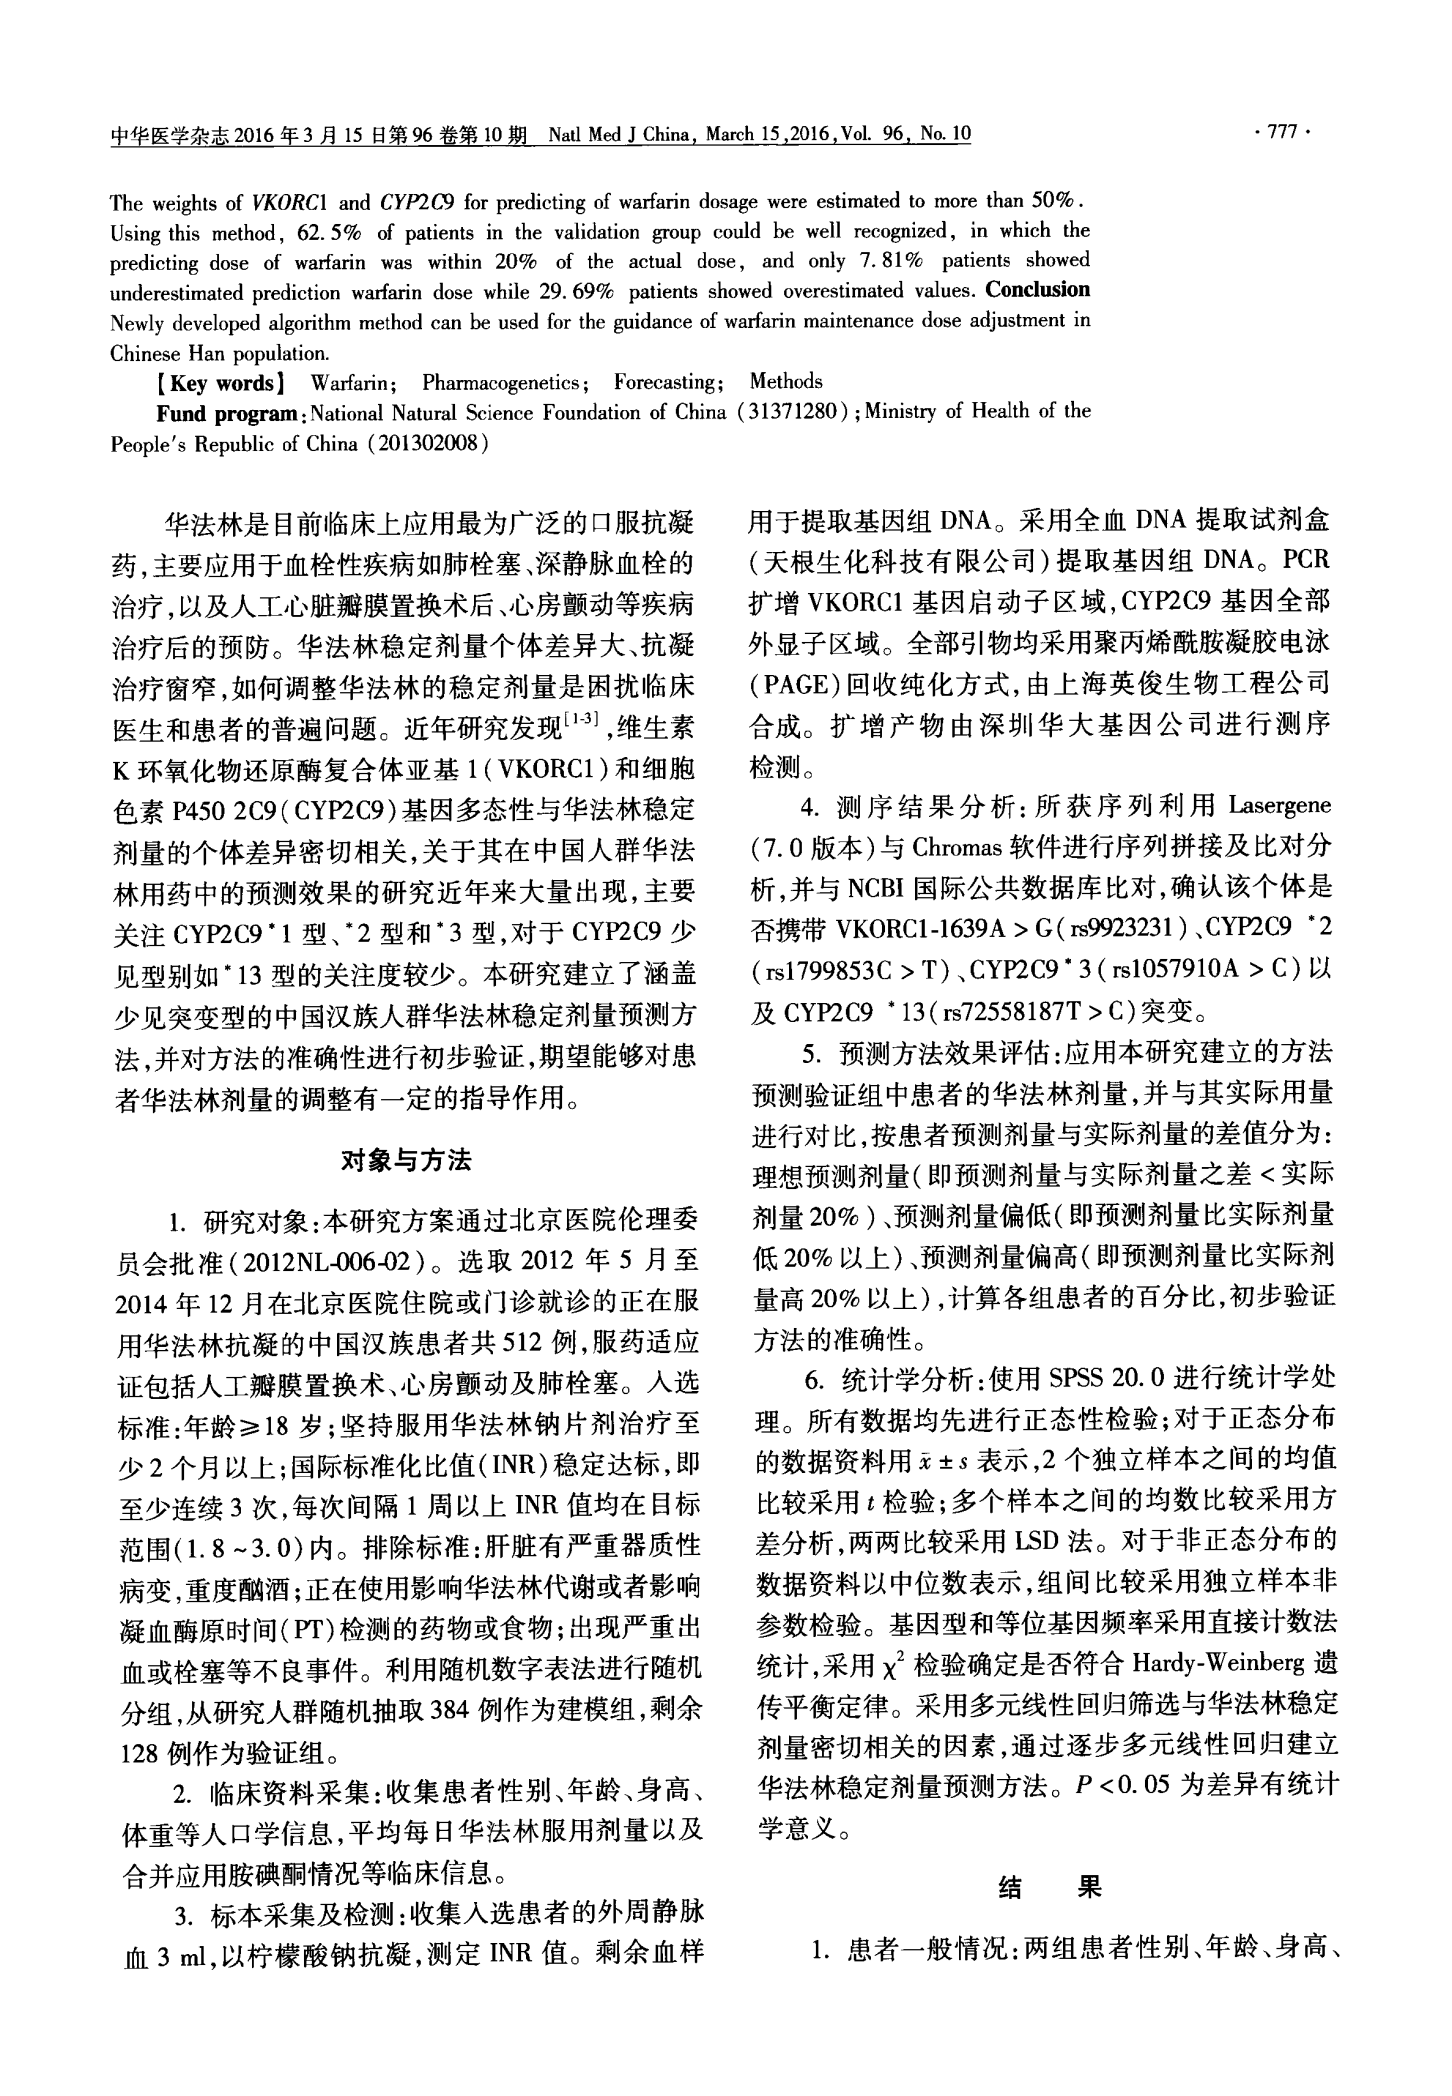 指导中国汉族人群华法林用量预测方法的建立与评价重点